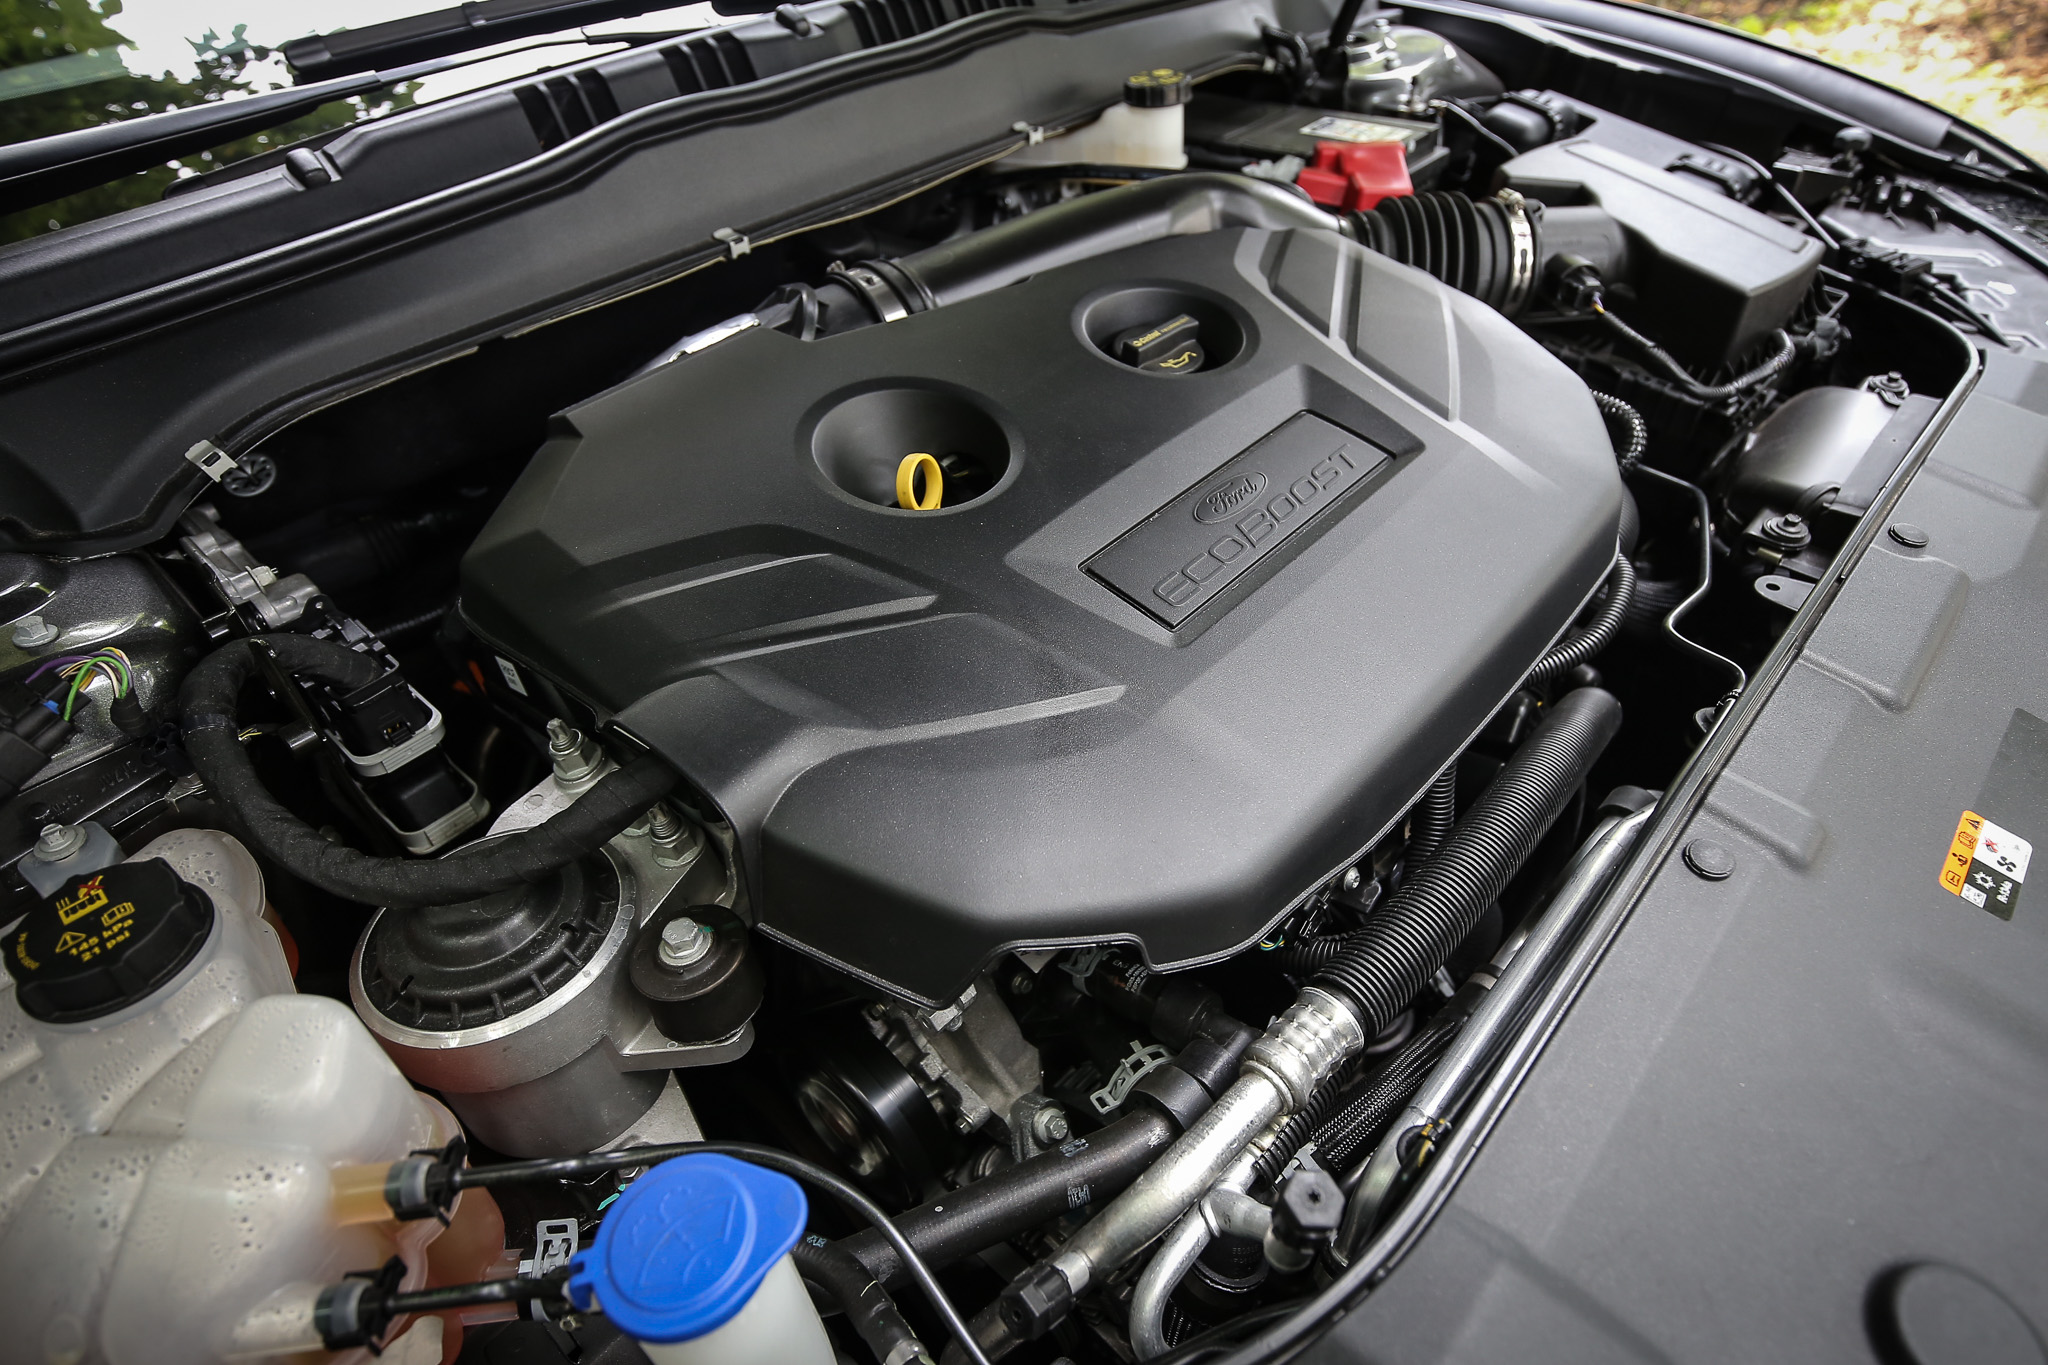 搭載 2.0L EcoBoost®240 高效渦輪汽油引擎，可輸出 240ps/5300rpm 最大馬力與 35.2kgm/2300~4900rpm 峰值扭力。